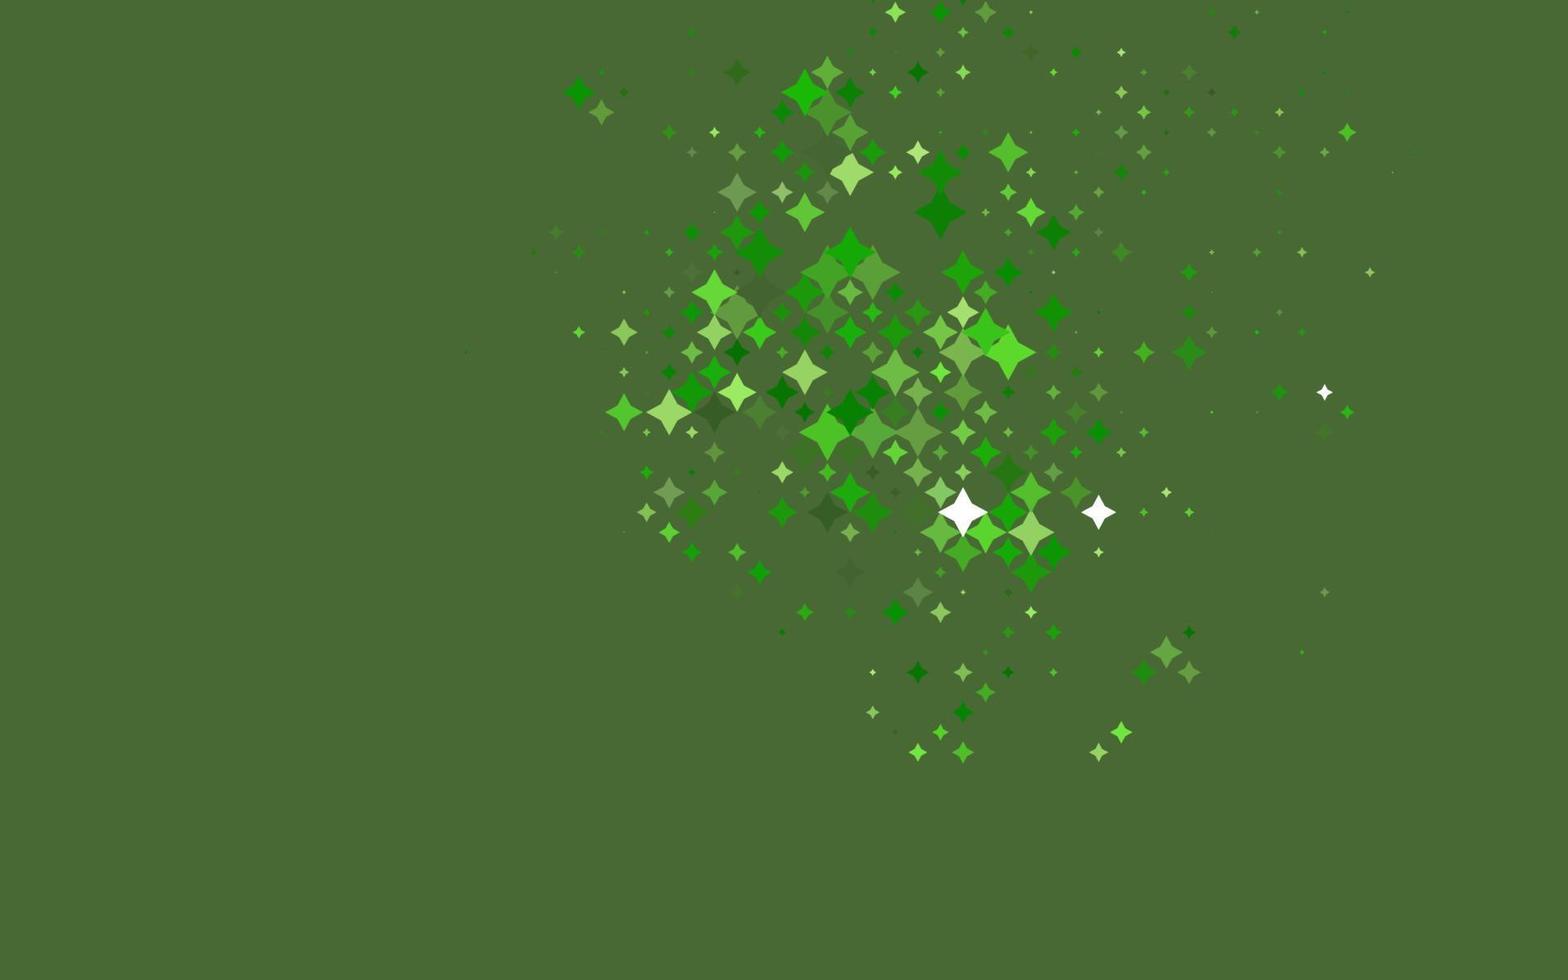 modello vettoriale verde chiaro con stelle di Natale.